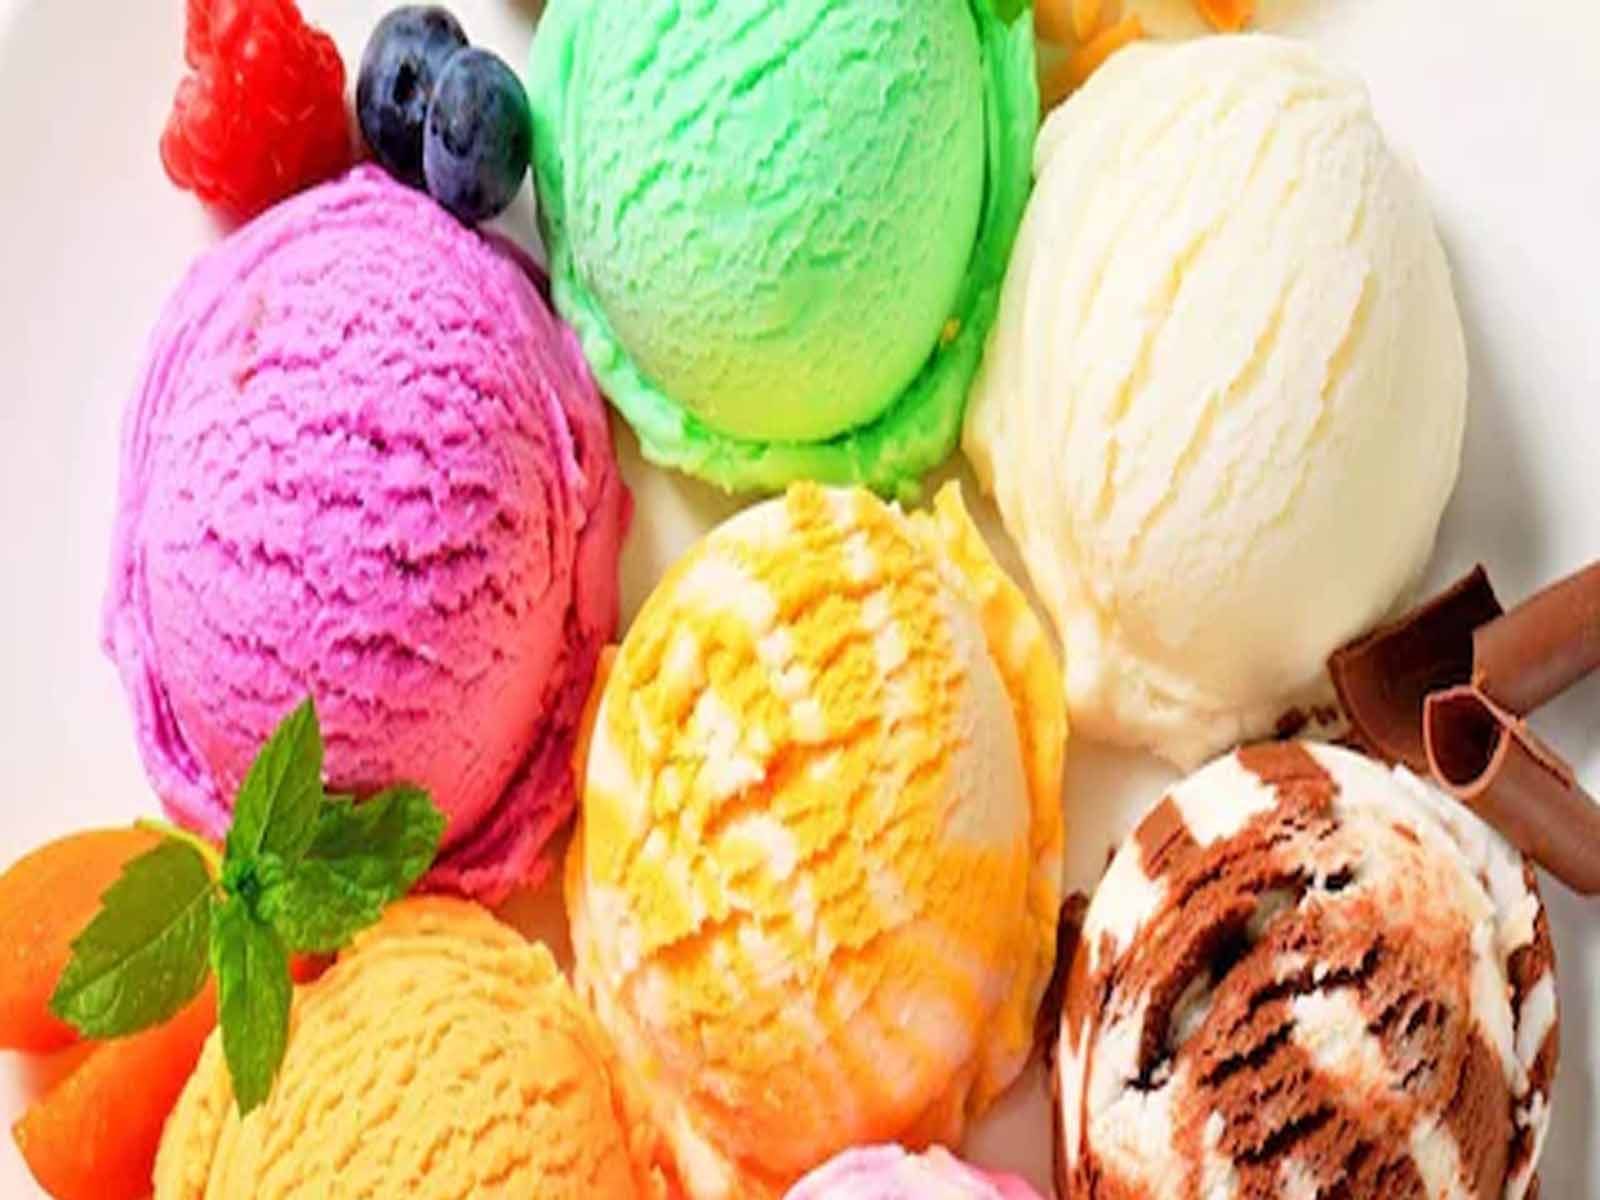 Ice Cream- ਕੋਲਡ ਡਰਿੰਕਸ ਤੇ ਠੰਡੇ ਪਾਣੀ ਨਾਲ ਹੋ ਸਕਦਾ ਹੈ Brain Freeze, ਜਾਣੋ ਬਚਣ ਦੇ ਉਪਾਅ
